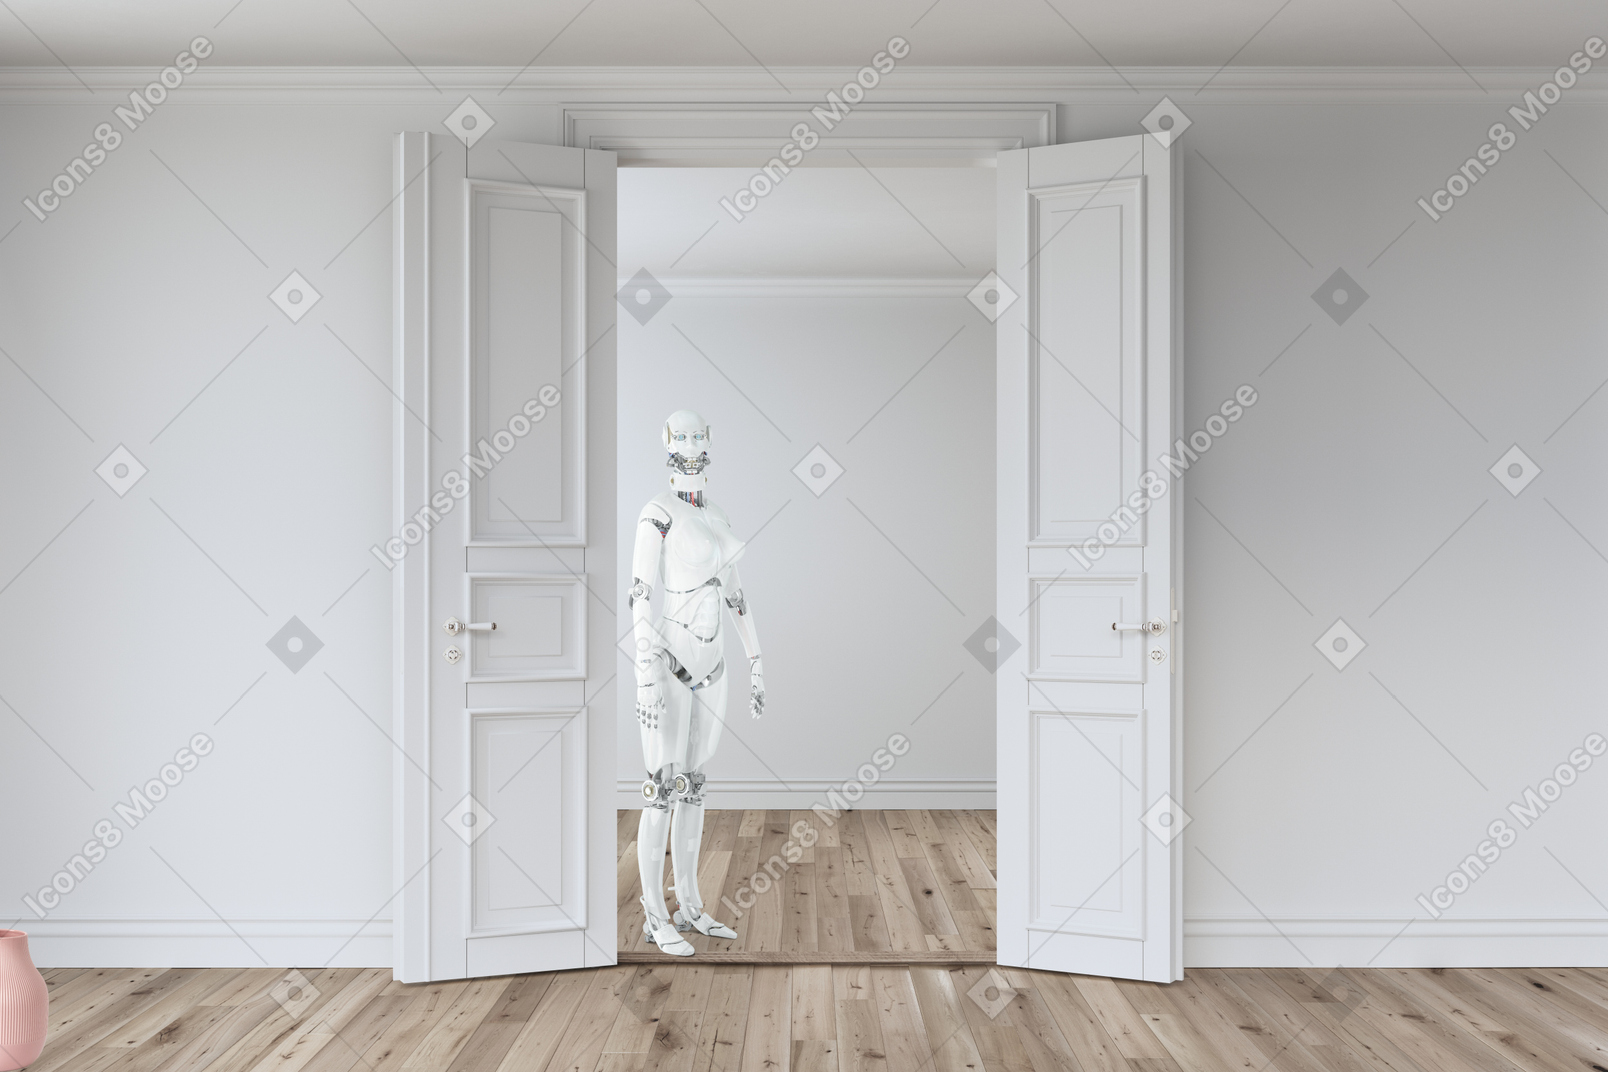 White robot standing in front of an open door